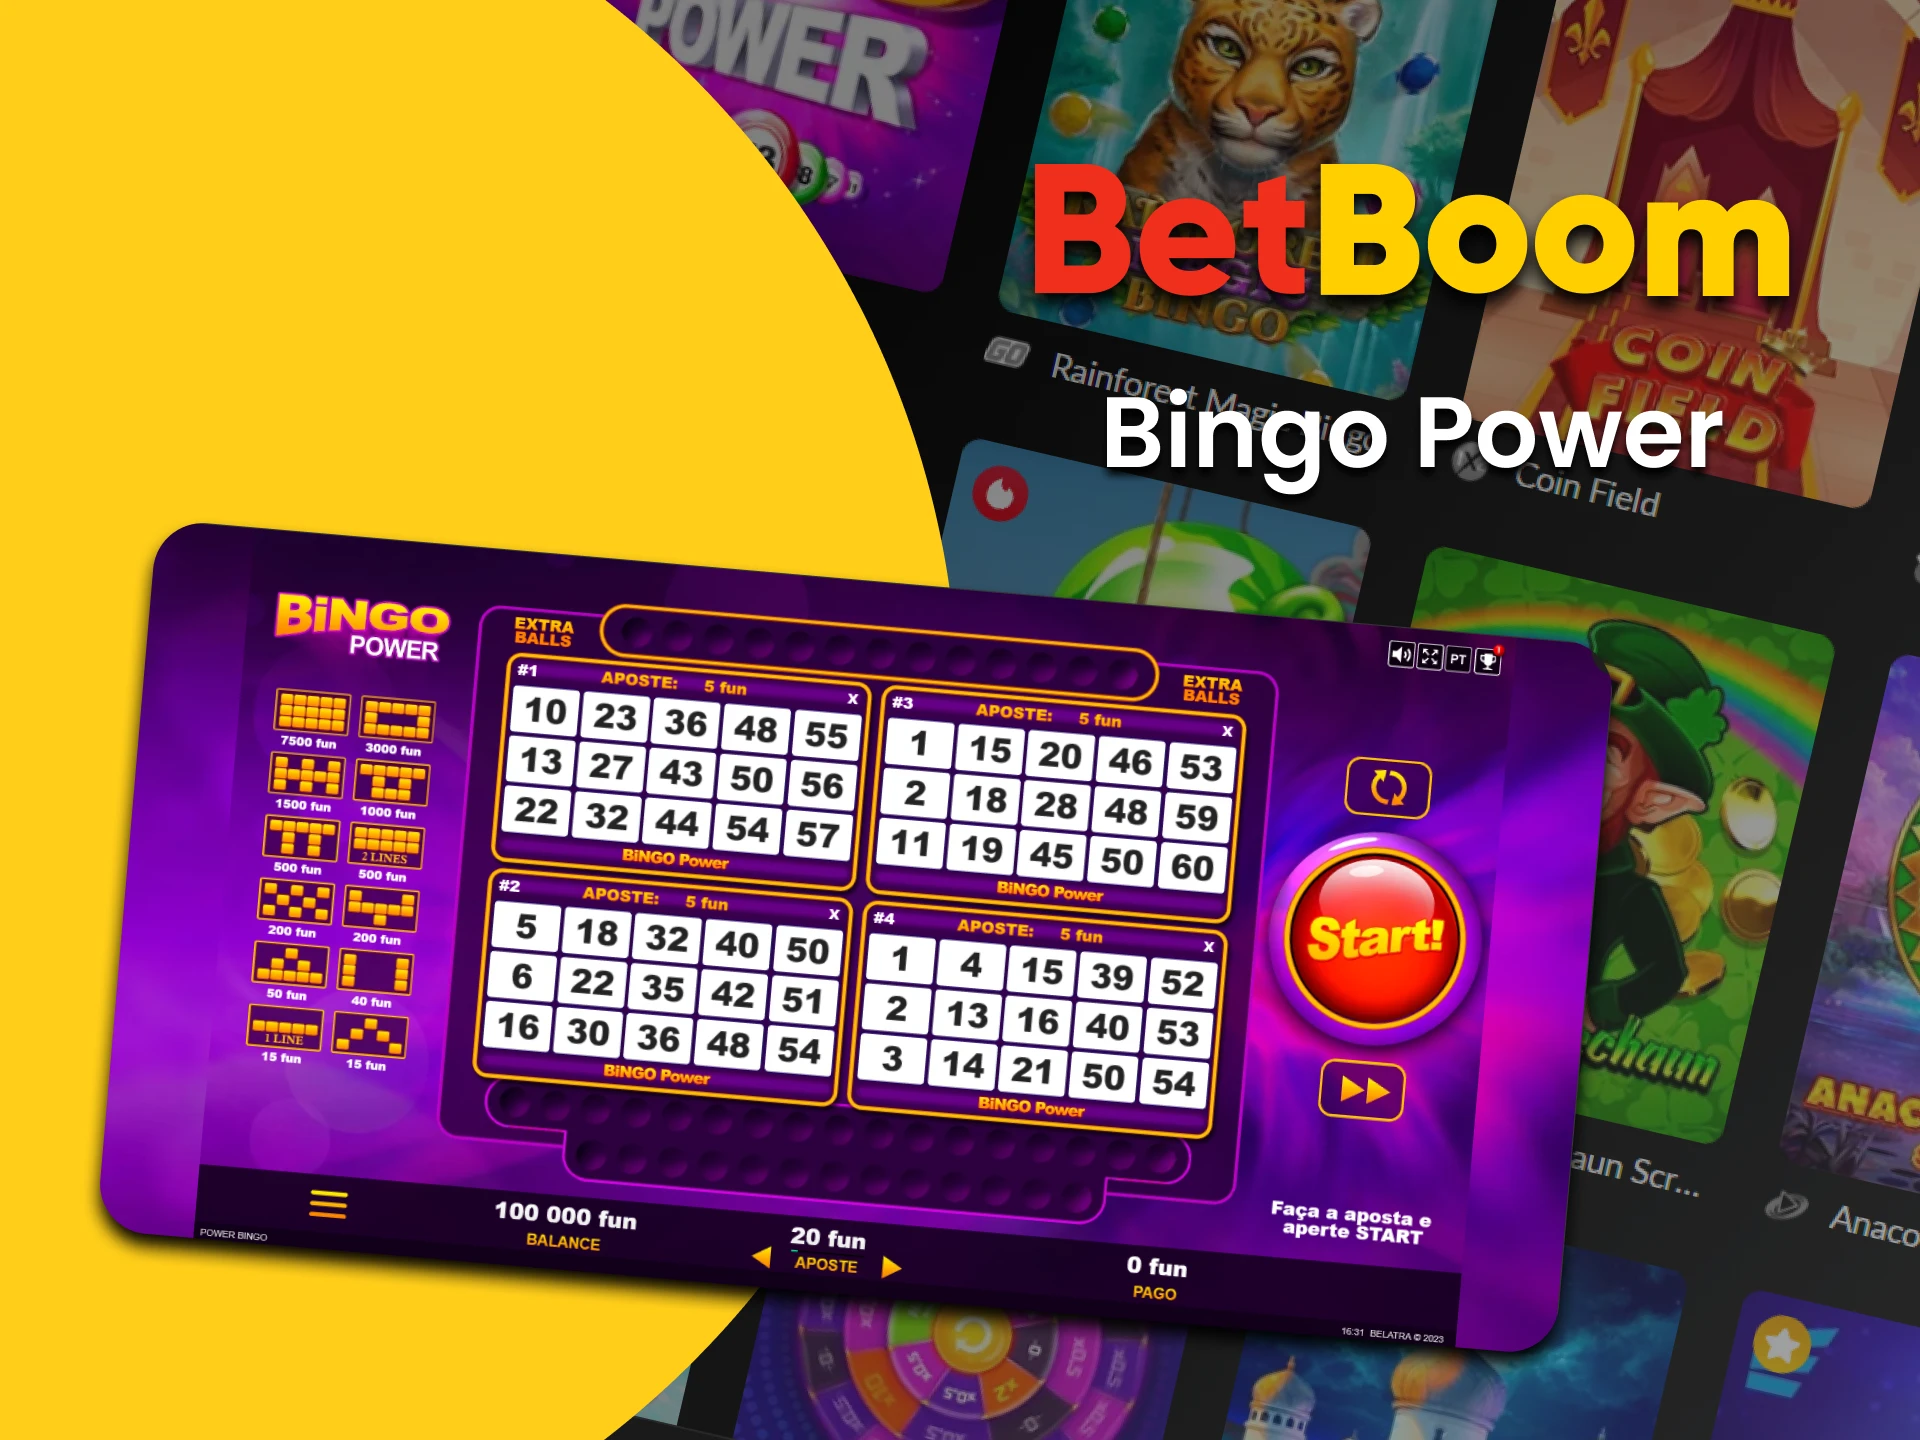 Vá para a seção Bingo do BetBoom para jogar Bingo Power.